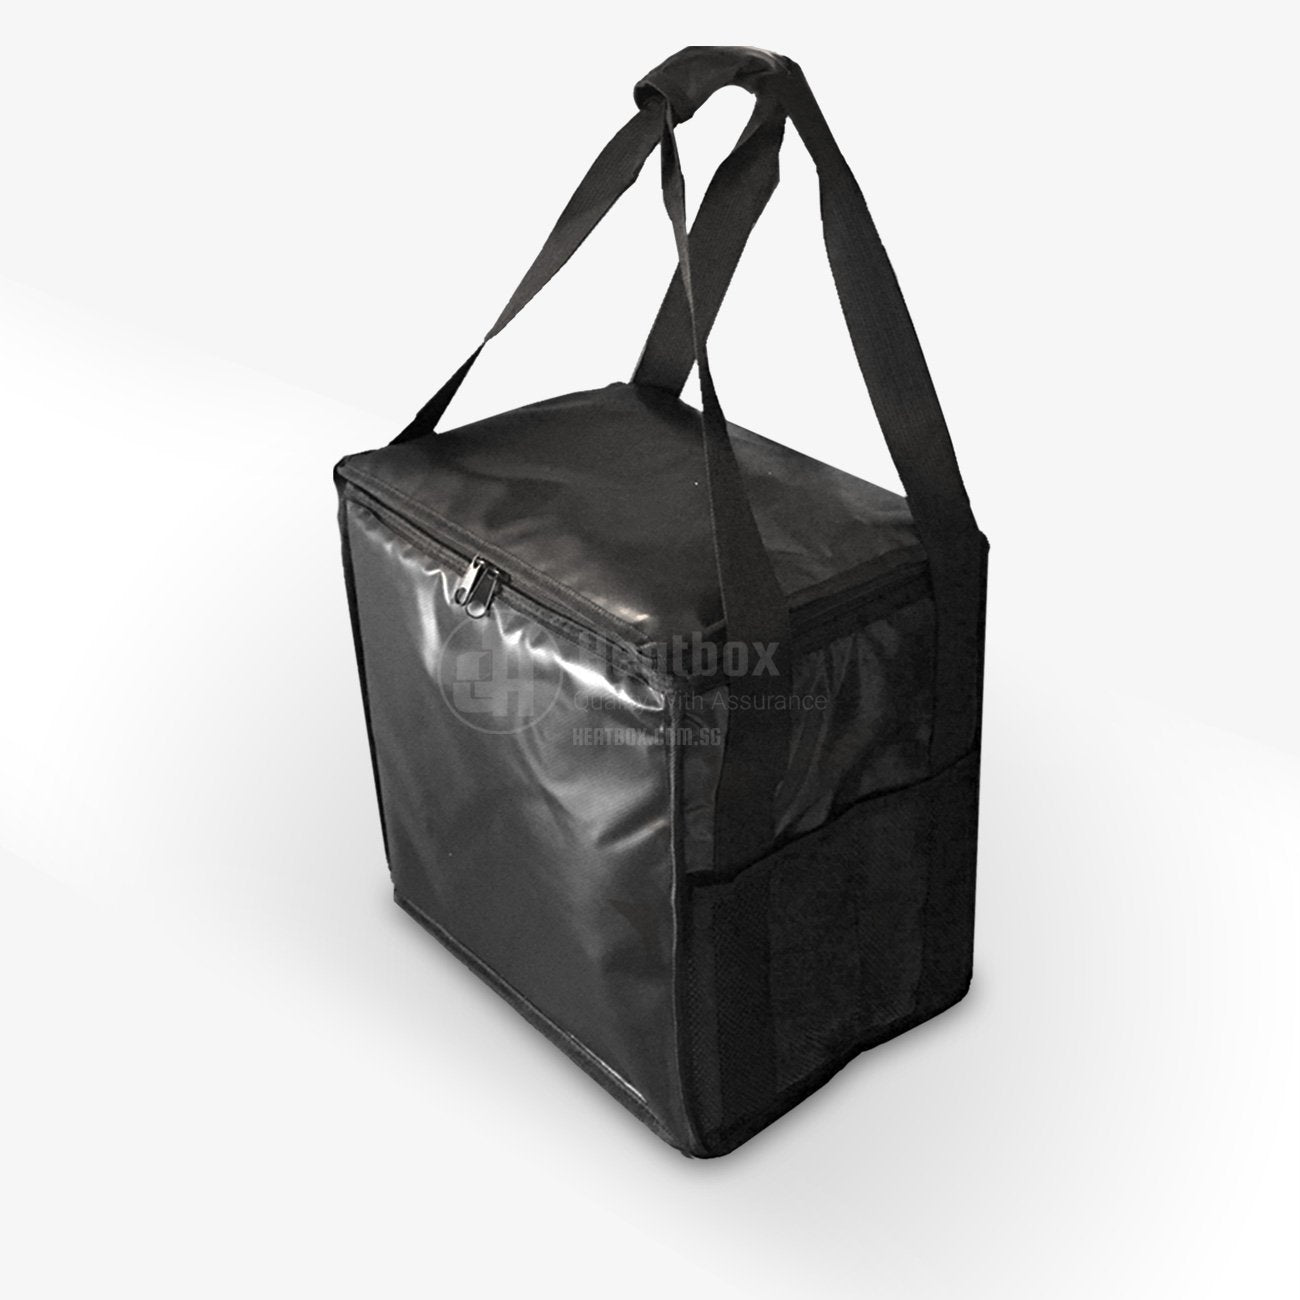 Black food delivery bag 23.2L for hot/warm/cold food item, parcel bag . Business quality